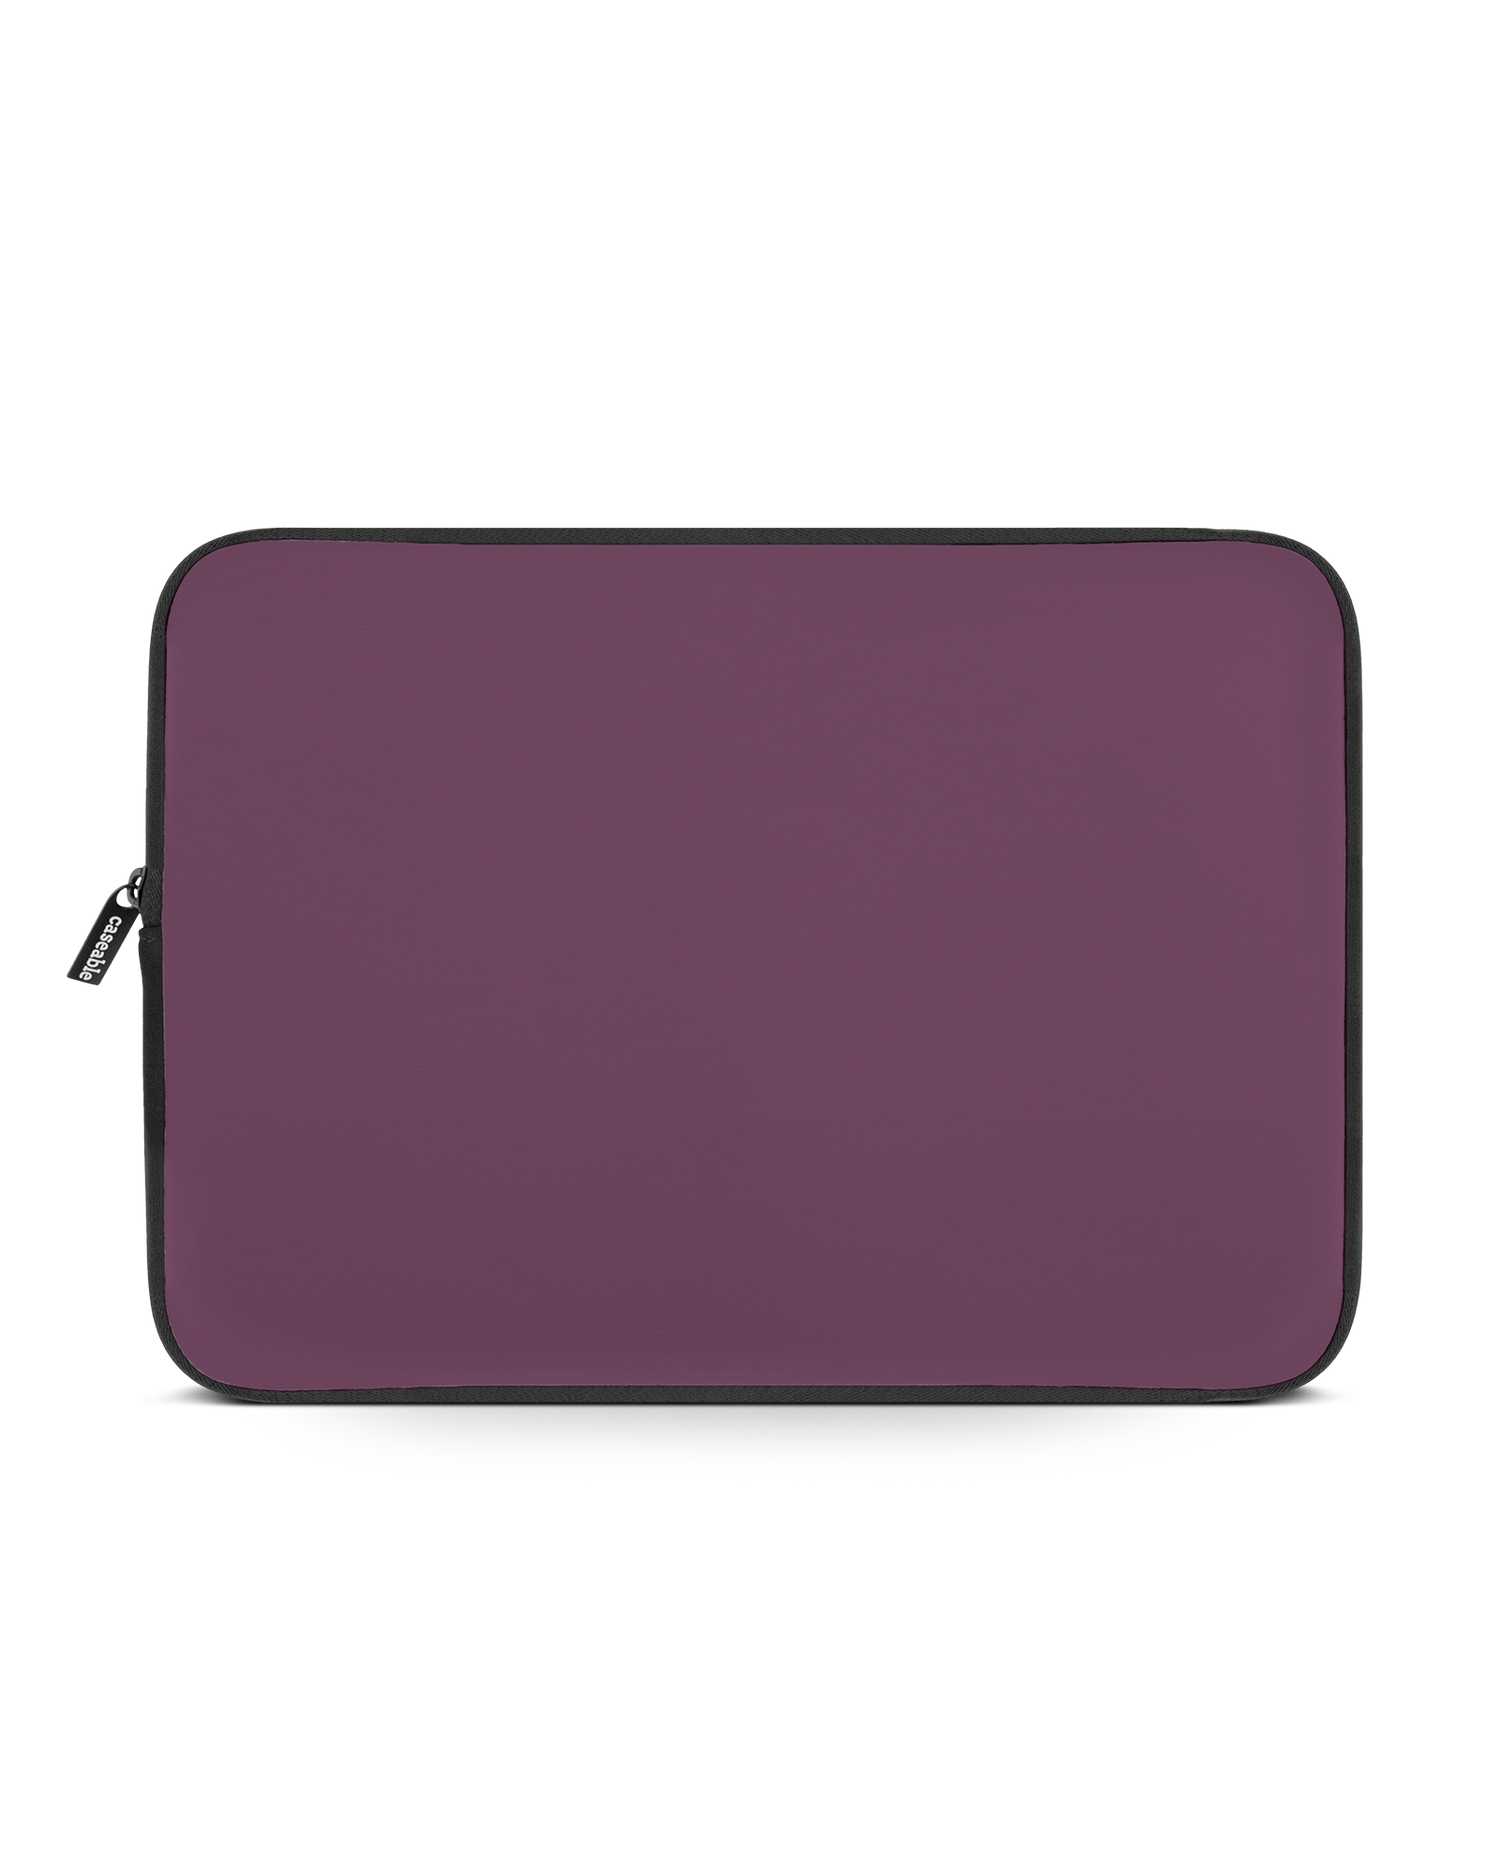 PLUM Laptop Case 14-15 inch: Front View